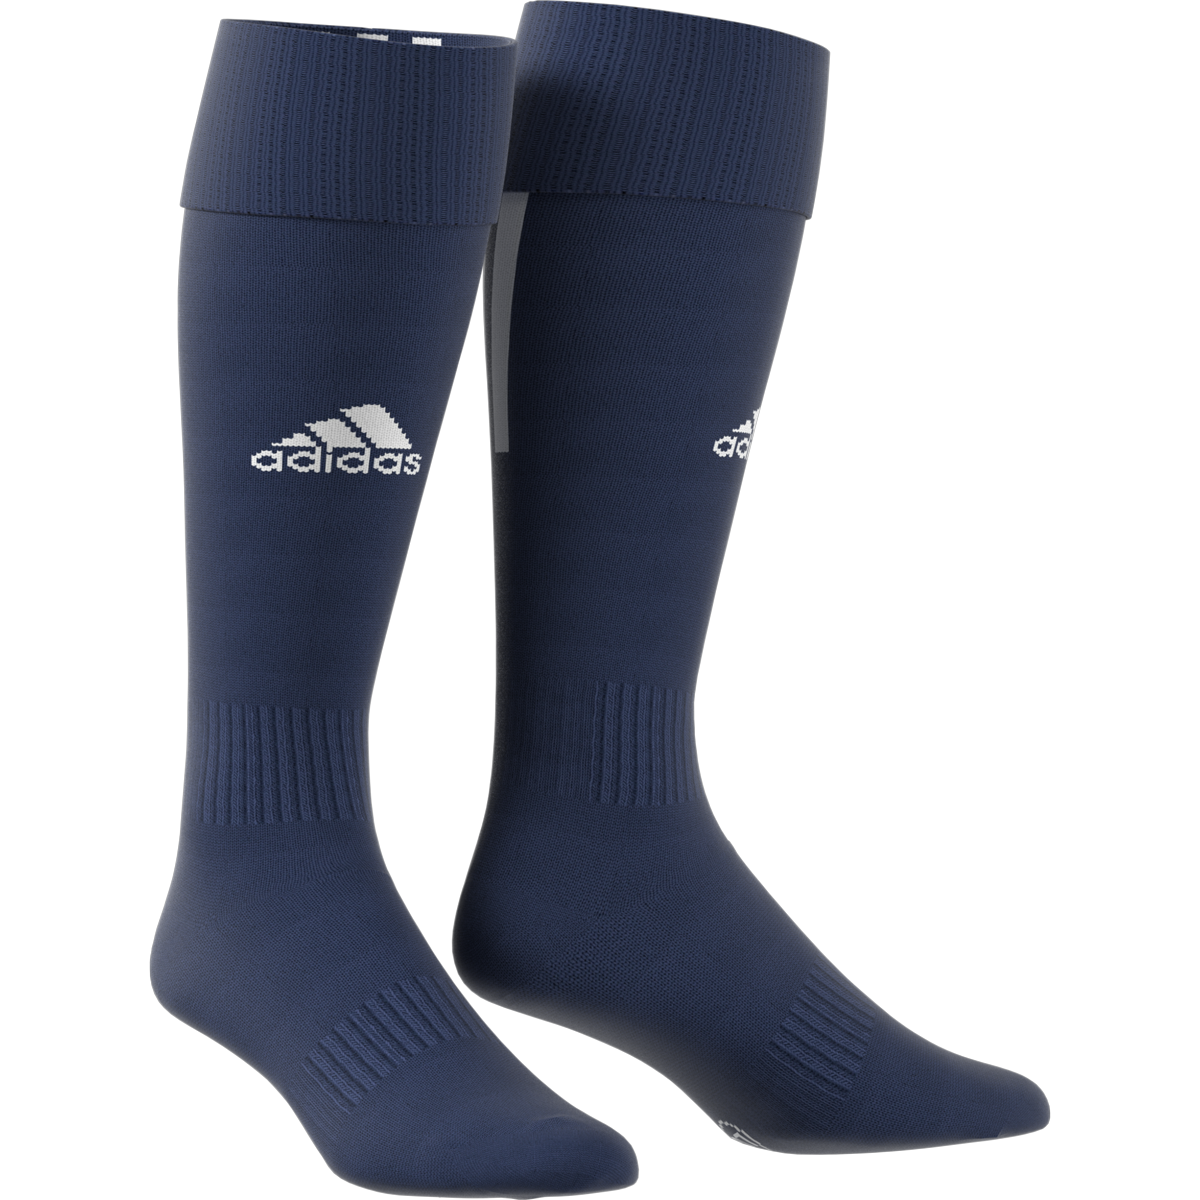 Adidas Santos 18 tmavě modrá/bílá EU 37/39